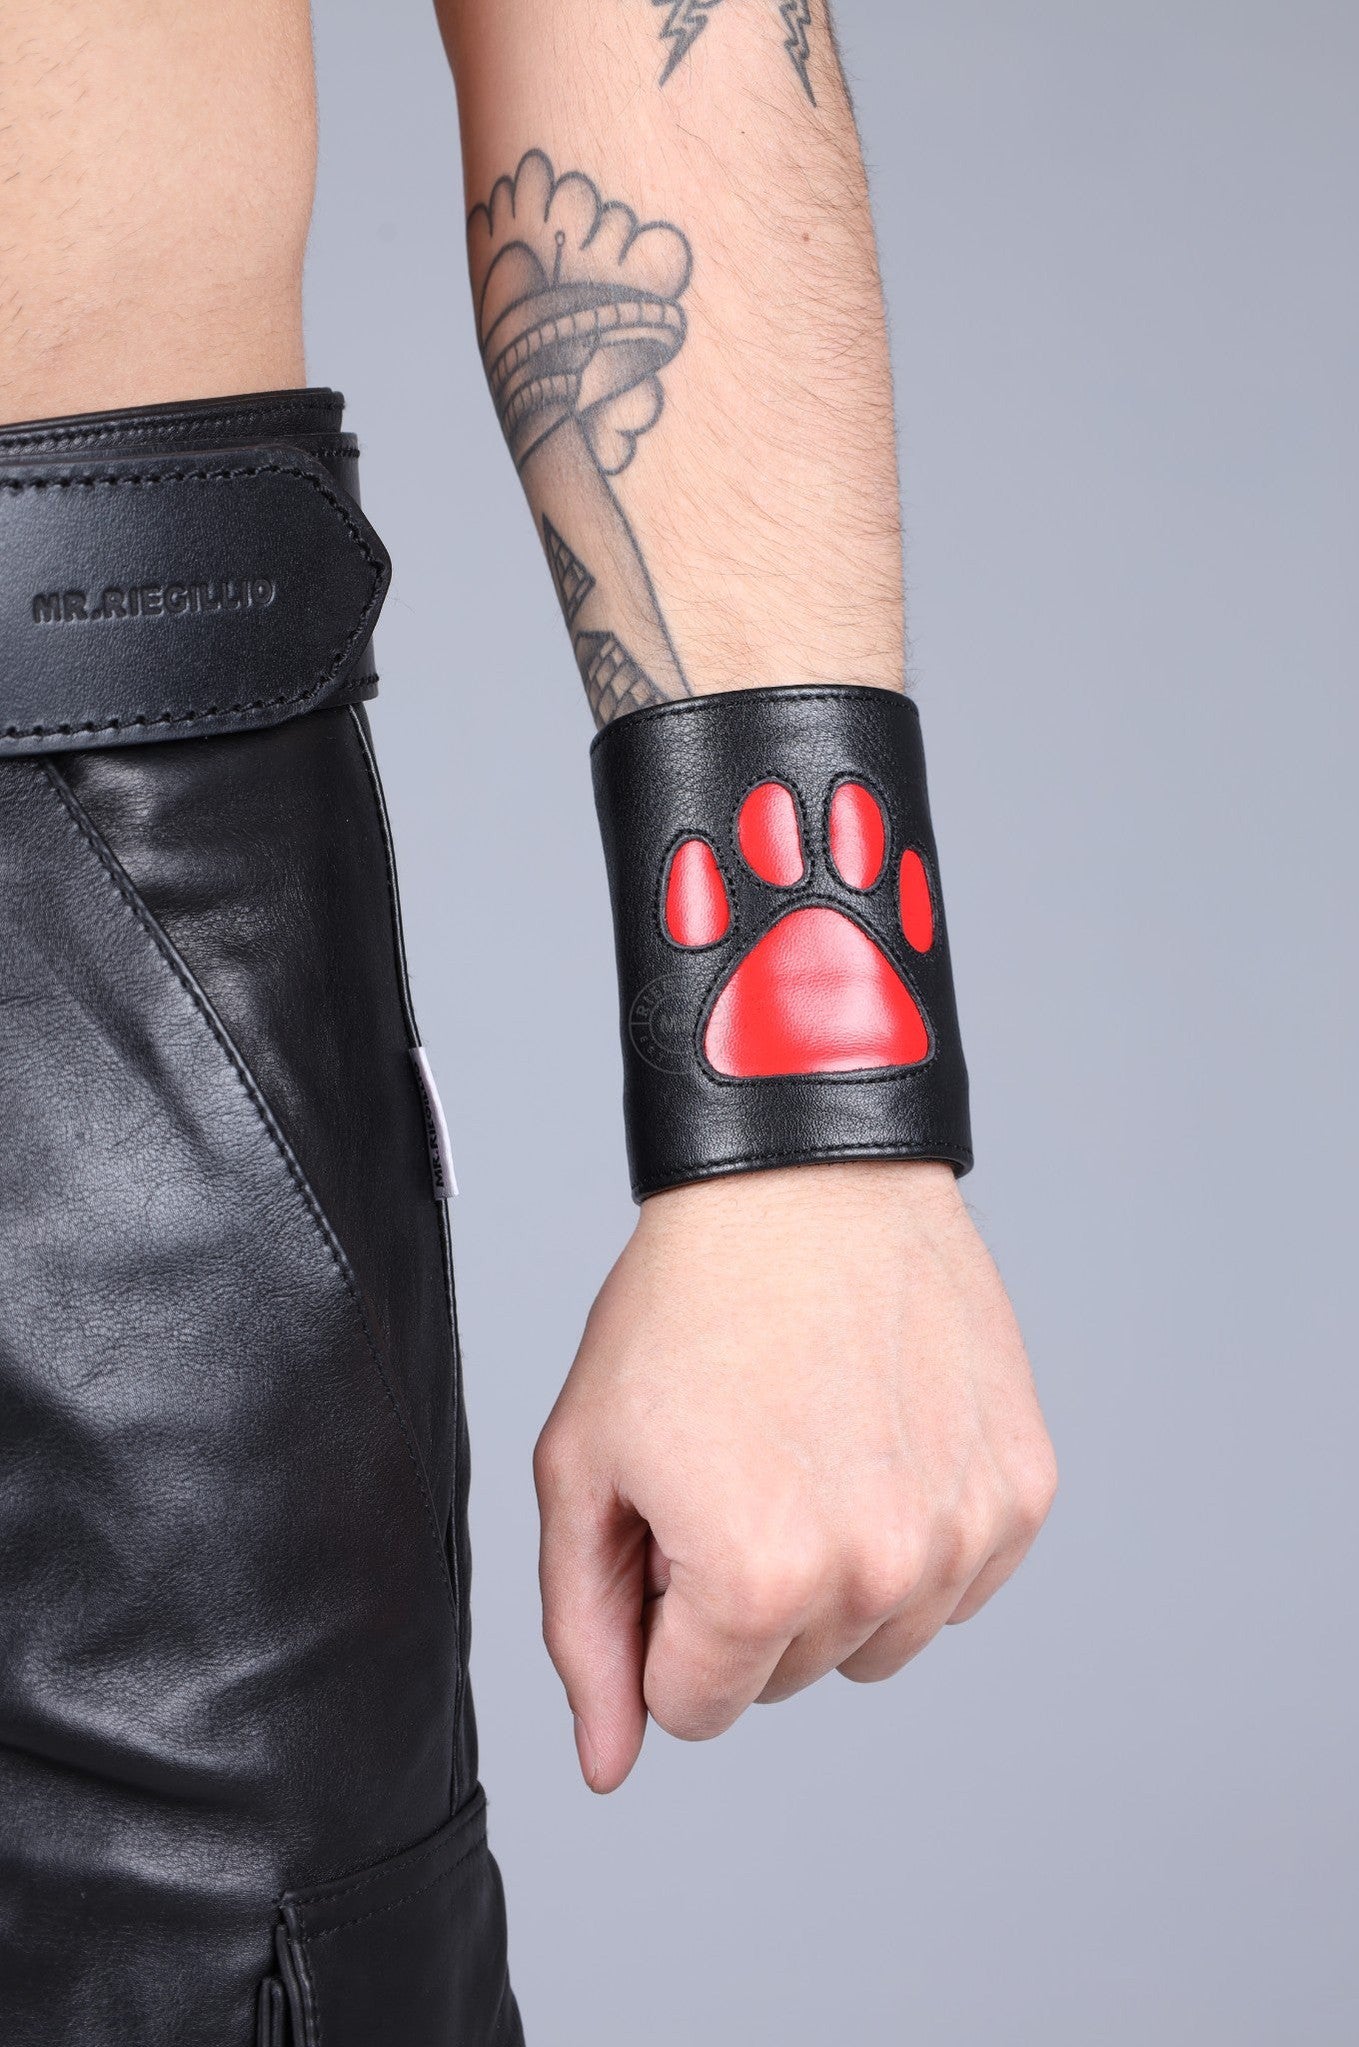 Black Leather Puppy Wrist Wallet - Red at MR. Riegillio